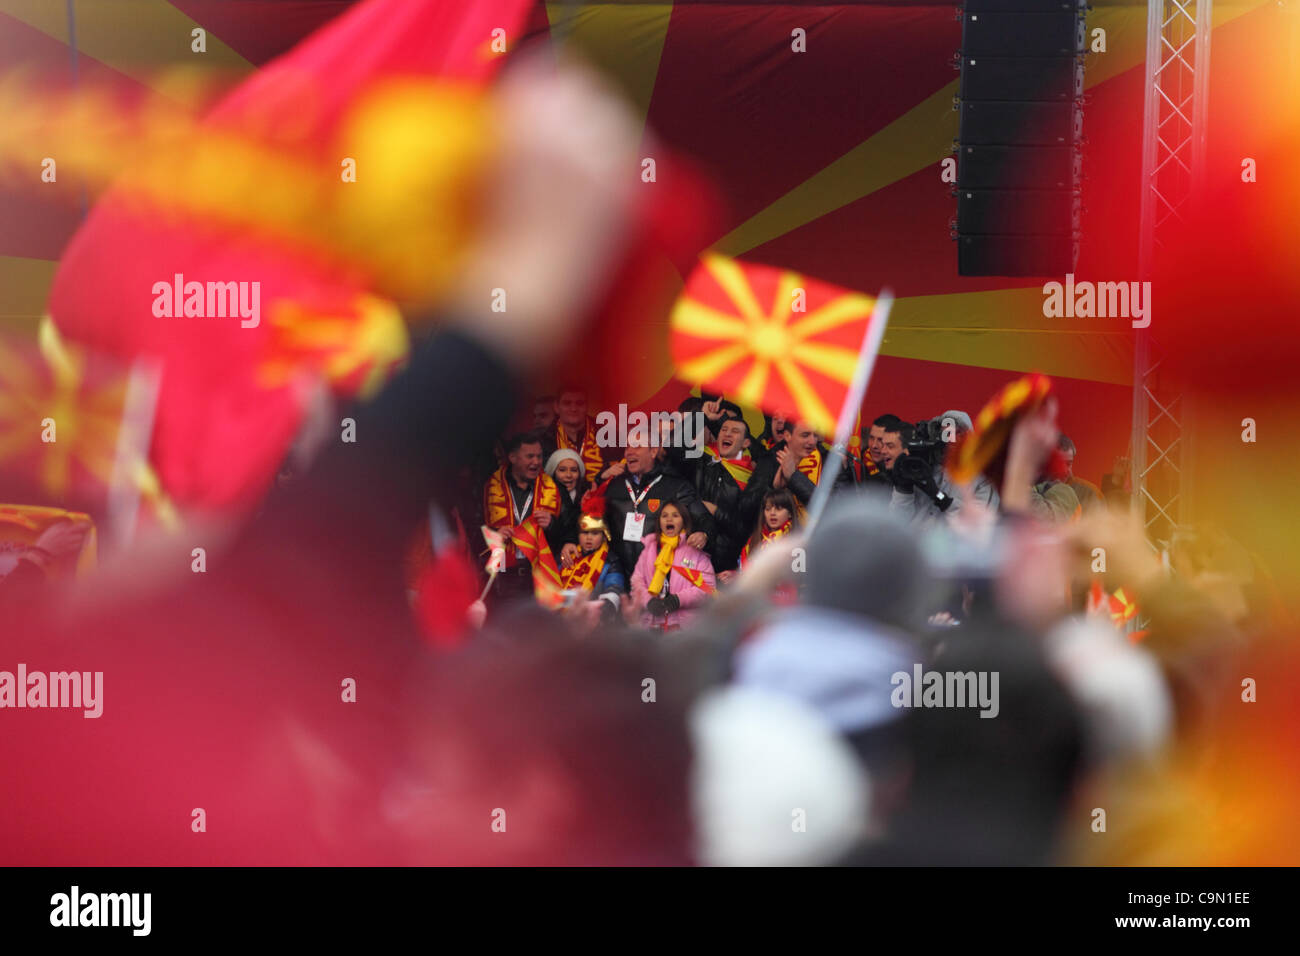 SKOPJE, MACEDONIA 28/01/2012. Il macedone rappresentazione di pallamano ritorna alla Macedonia dopo aver raggiunto il quinto posto negli uomini EHF EURO 2012 in Serbia. Il team si è accolti da decine di migliaia di persone nella piazza principale di Skopje, in Macedonia. Foto Stock